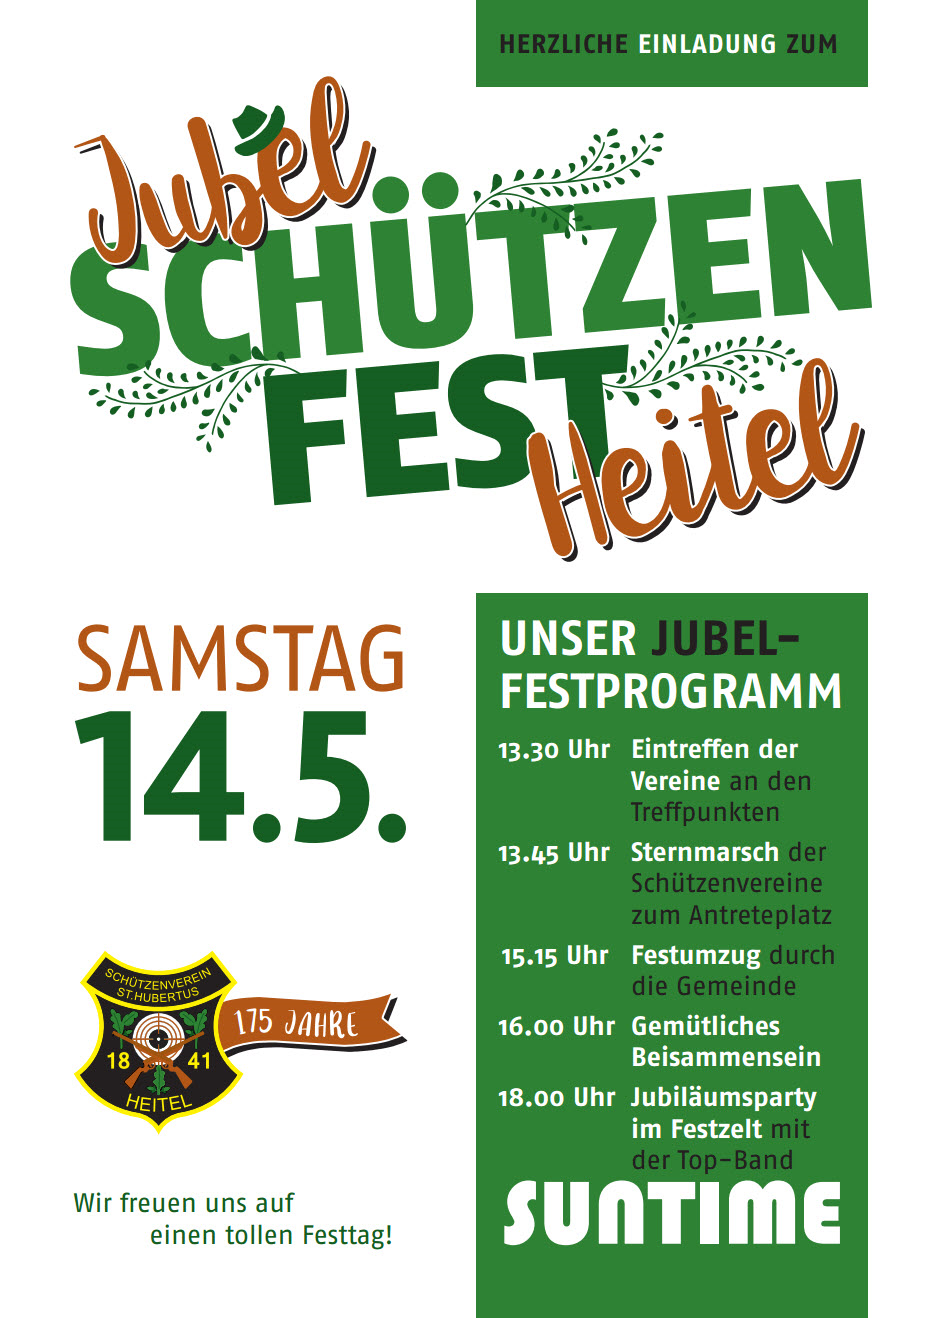 Jubelfest Heitel 2016